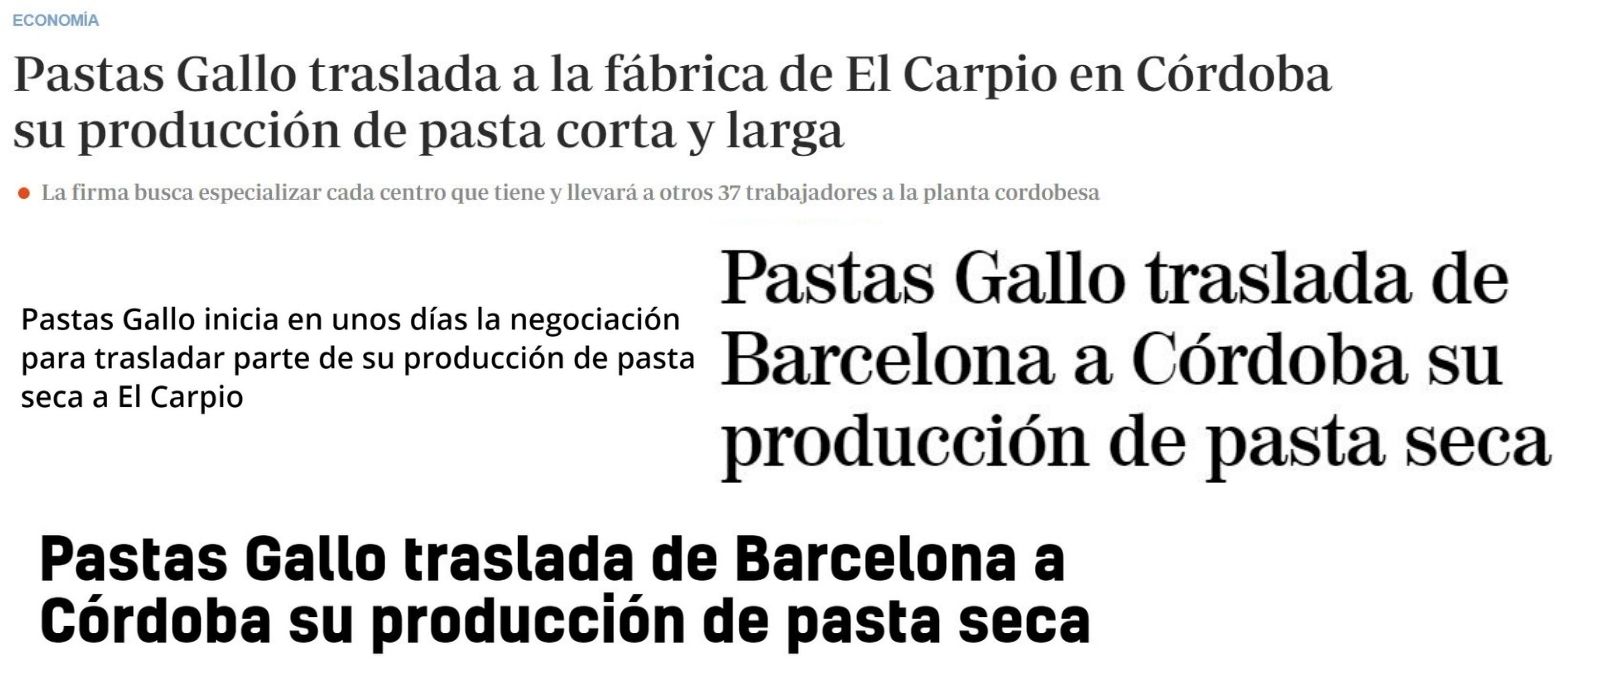 Ejemplos de titulares publicados sobre el traslado de parte de la producción de Pastas Gallo.